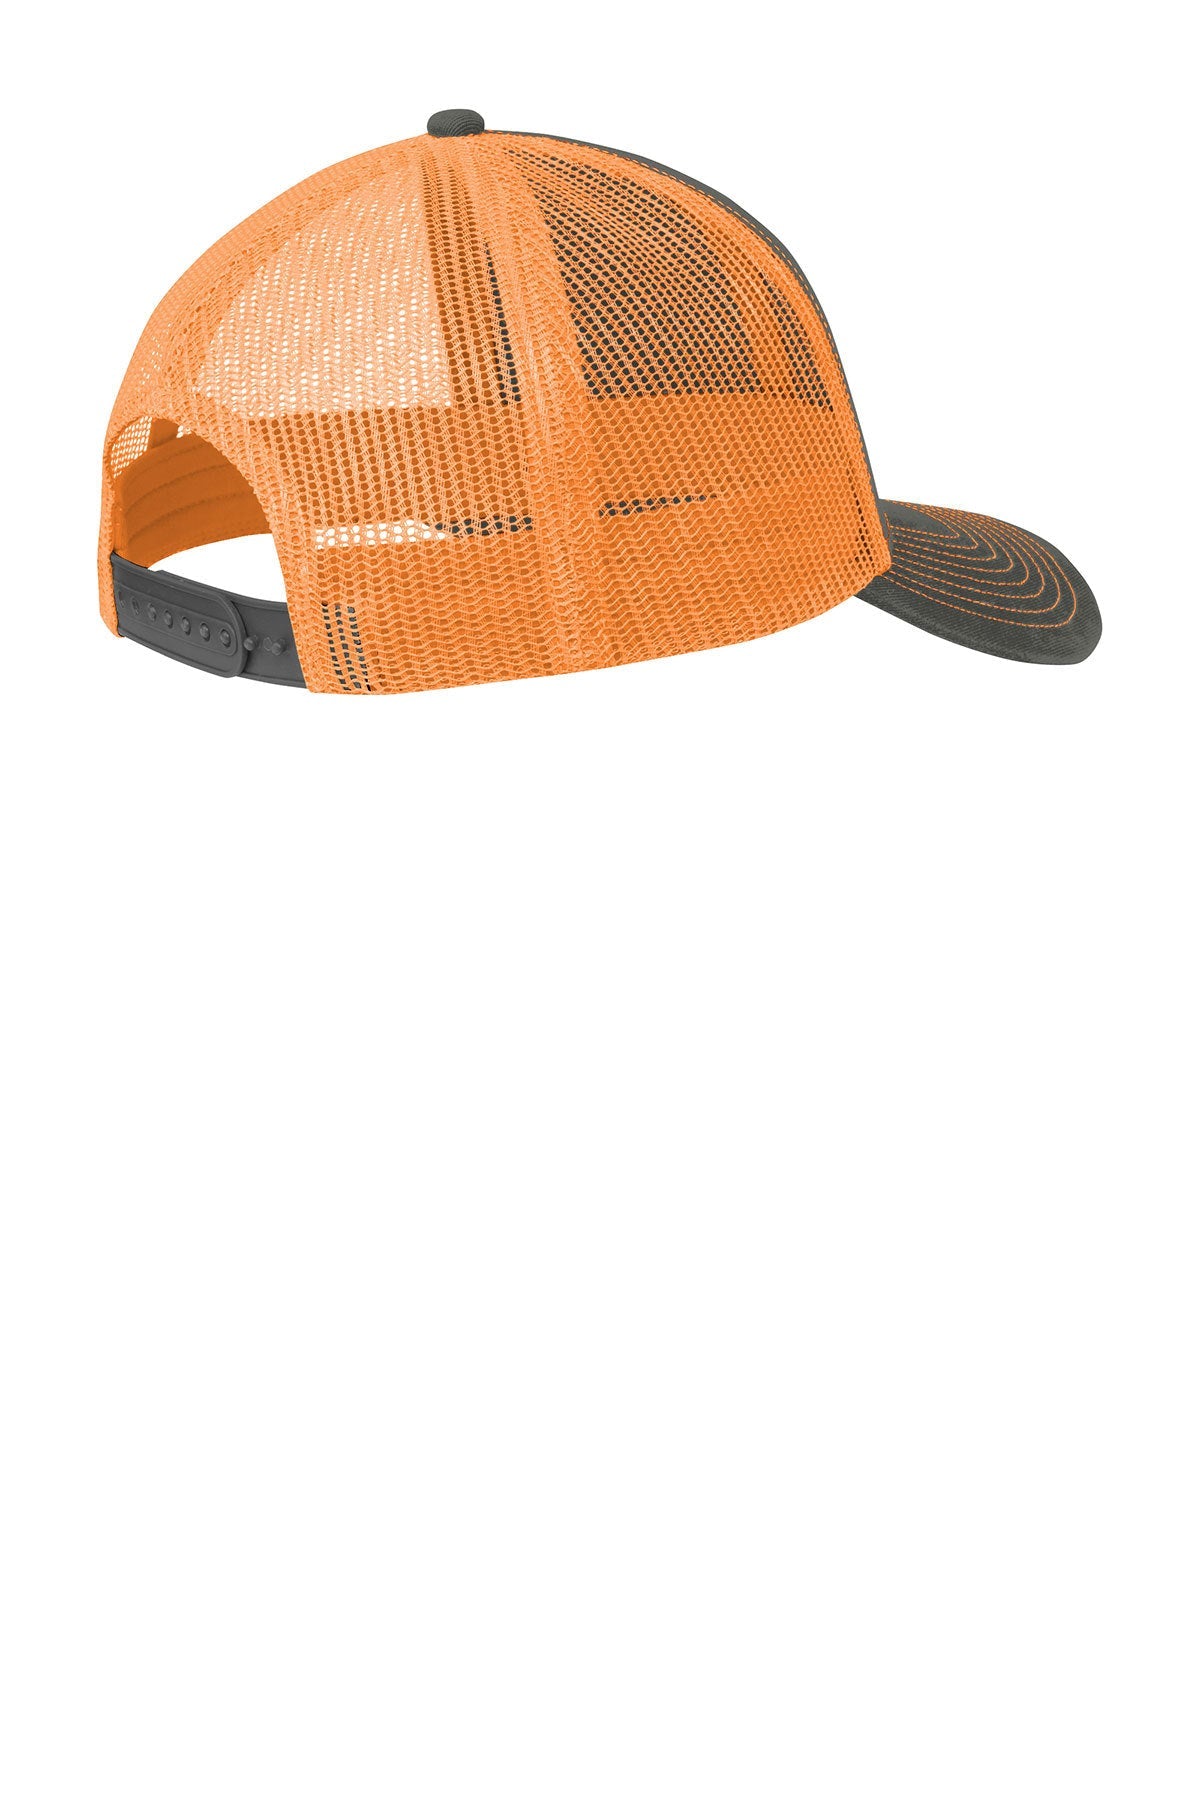 Port Authority Snapback Trucker Branded Caps, Grey Steel/ Neon Orange